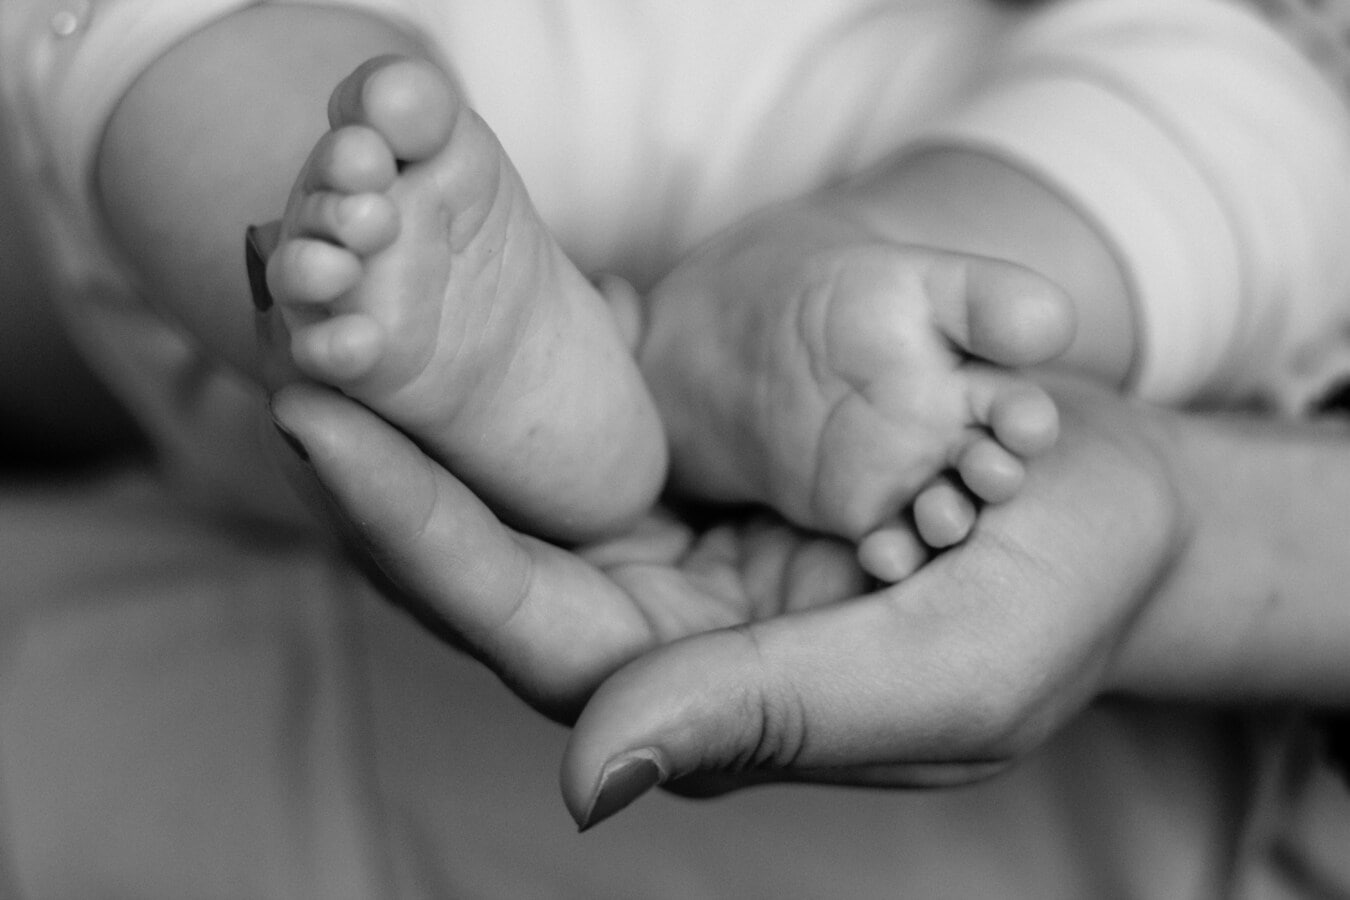 trẻ sơ sinh, em bé, bàn chân, trẻ mới biết đi, trẻ sơ sinh, chân, chân trần, bàn chân, mẹ, nắm giữ